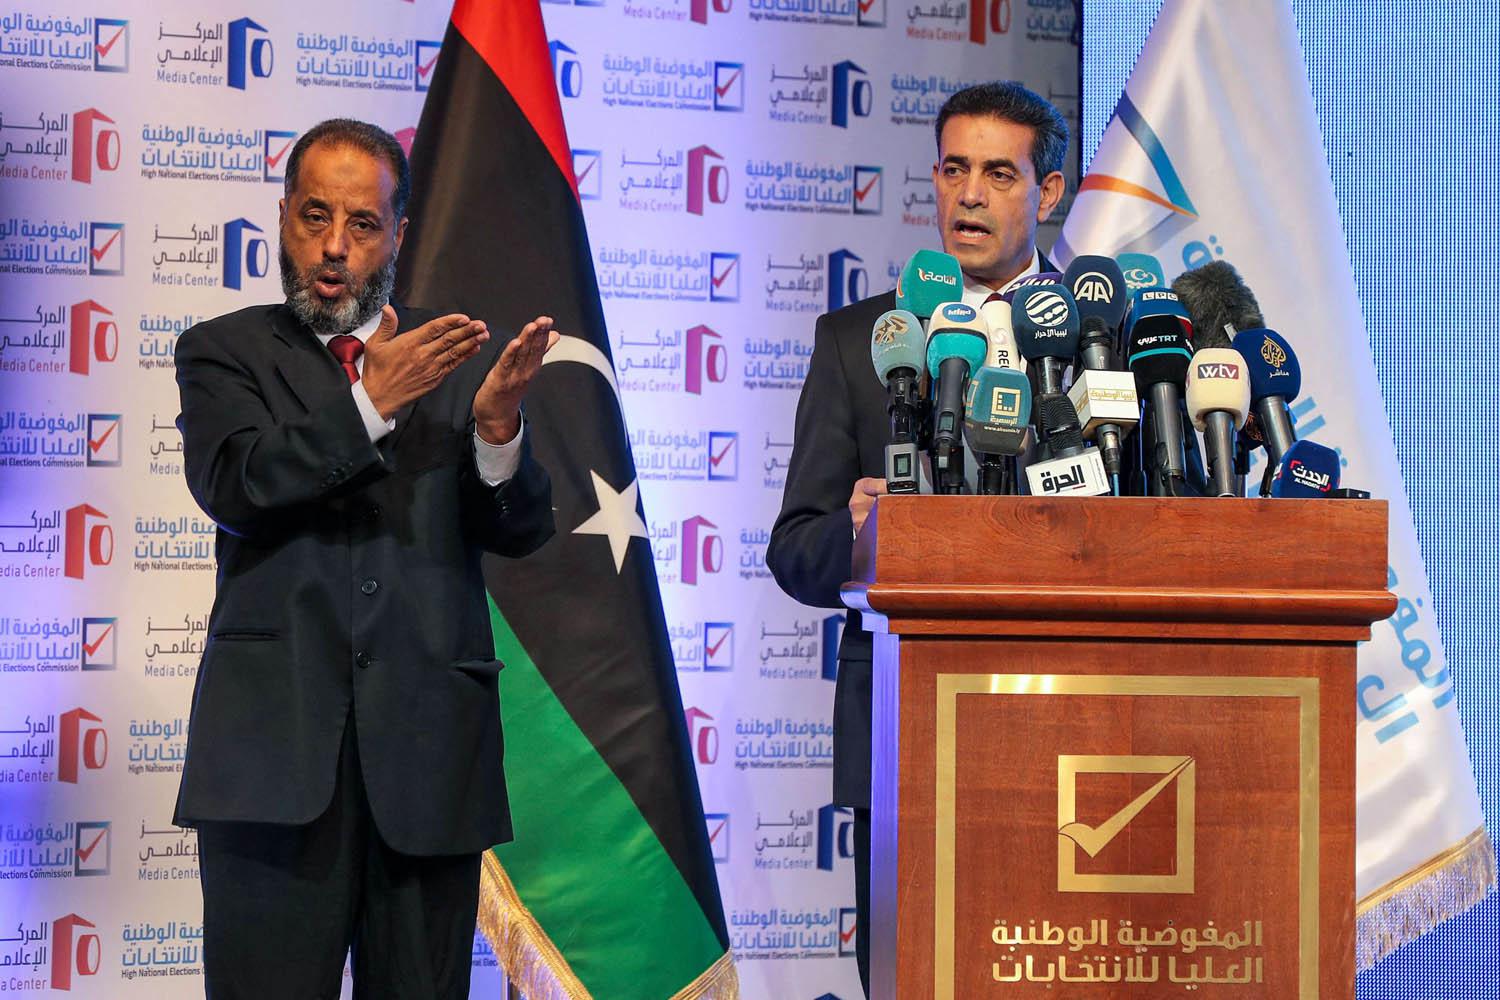 عماد السايح رئيس المفوضية العليا للانتخابات في ليبيا في مؤتمر صحفي بطرابلس